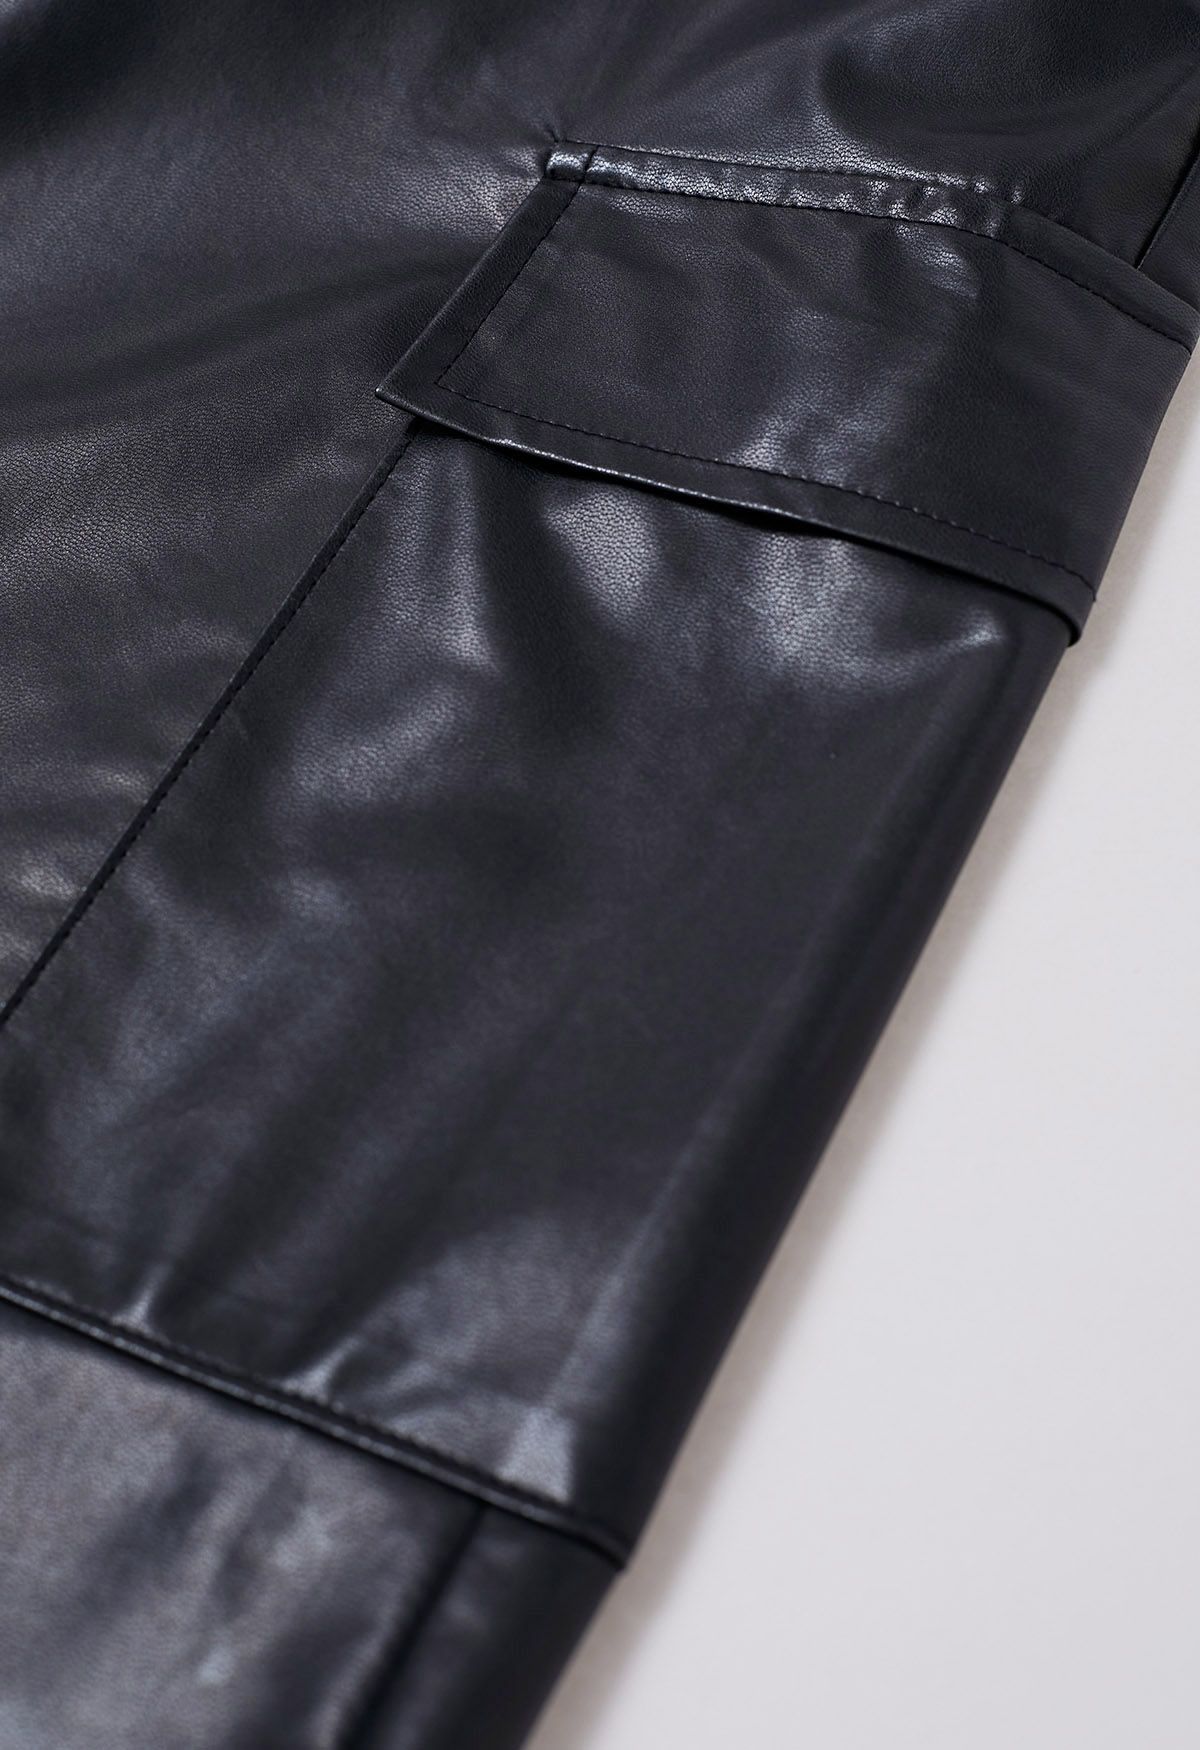 Falda larga estilo cargo de piel sintética en negro